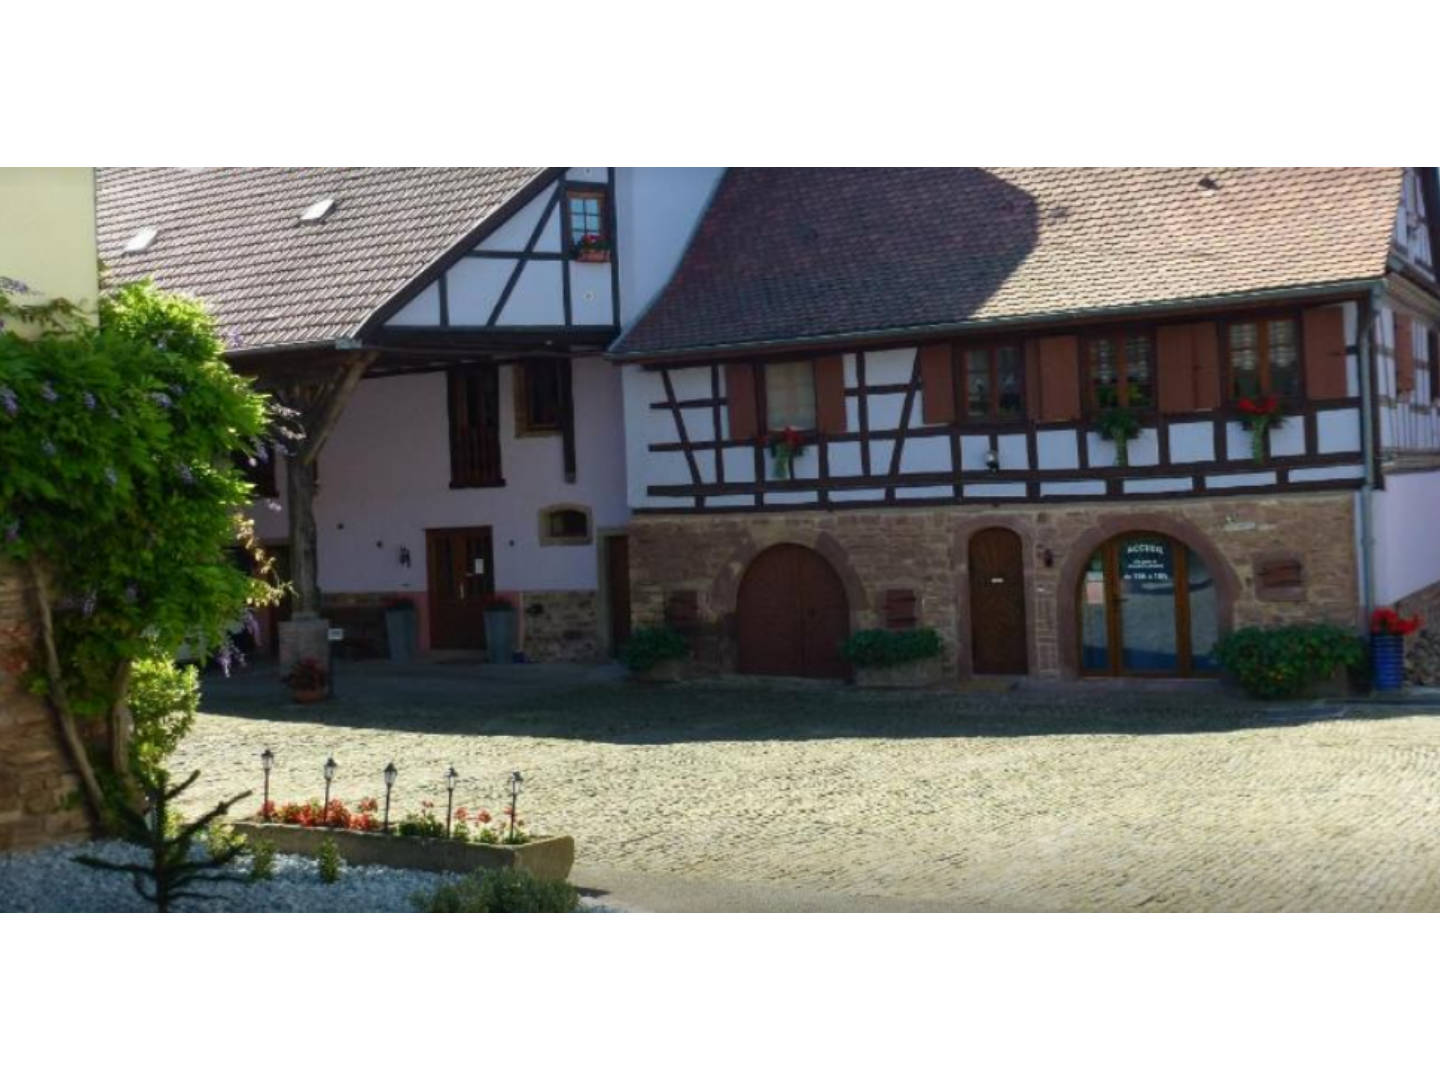 Breuschwickersheim Vacation Rental